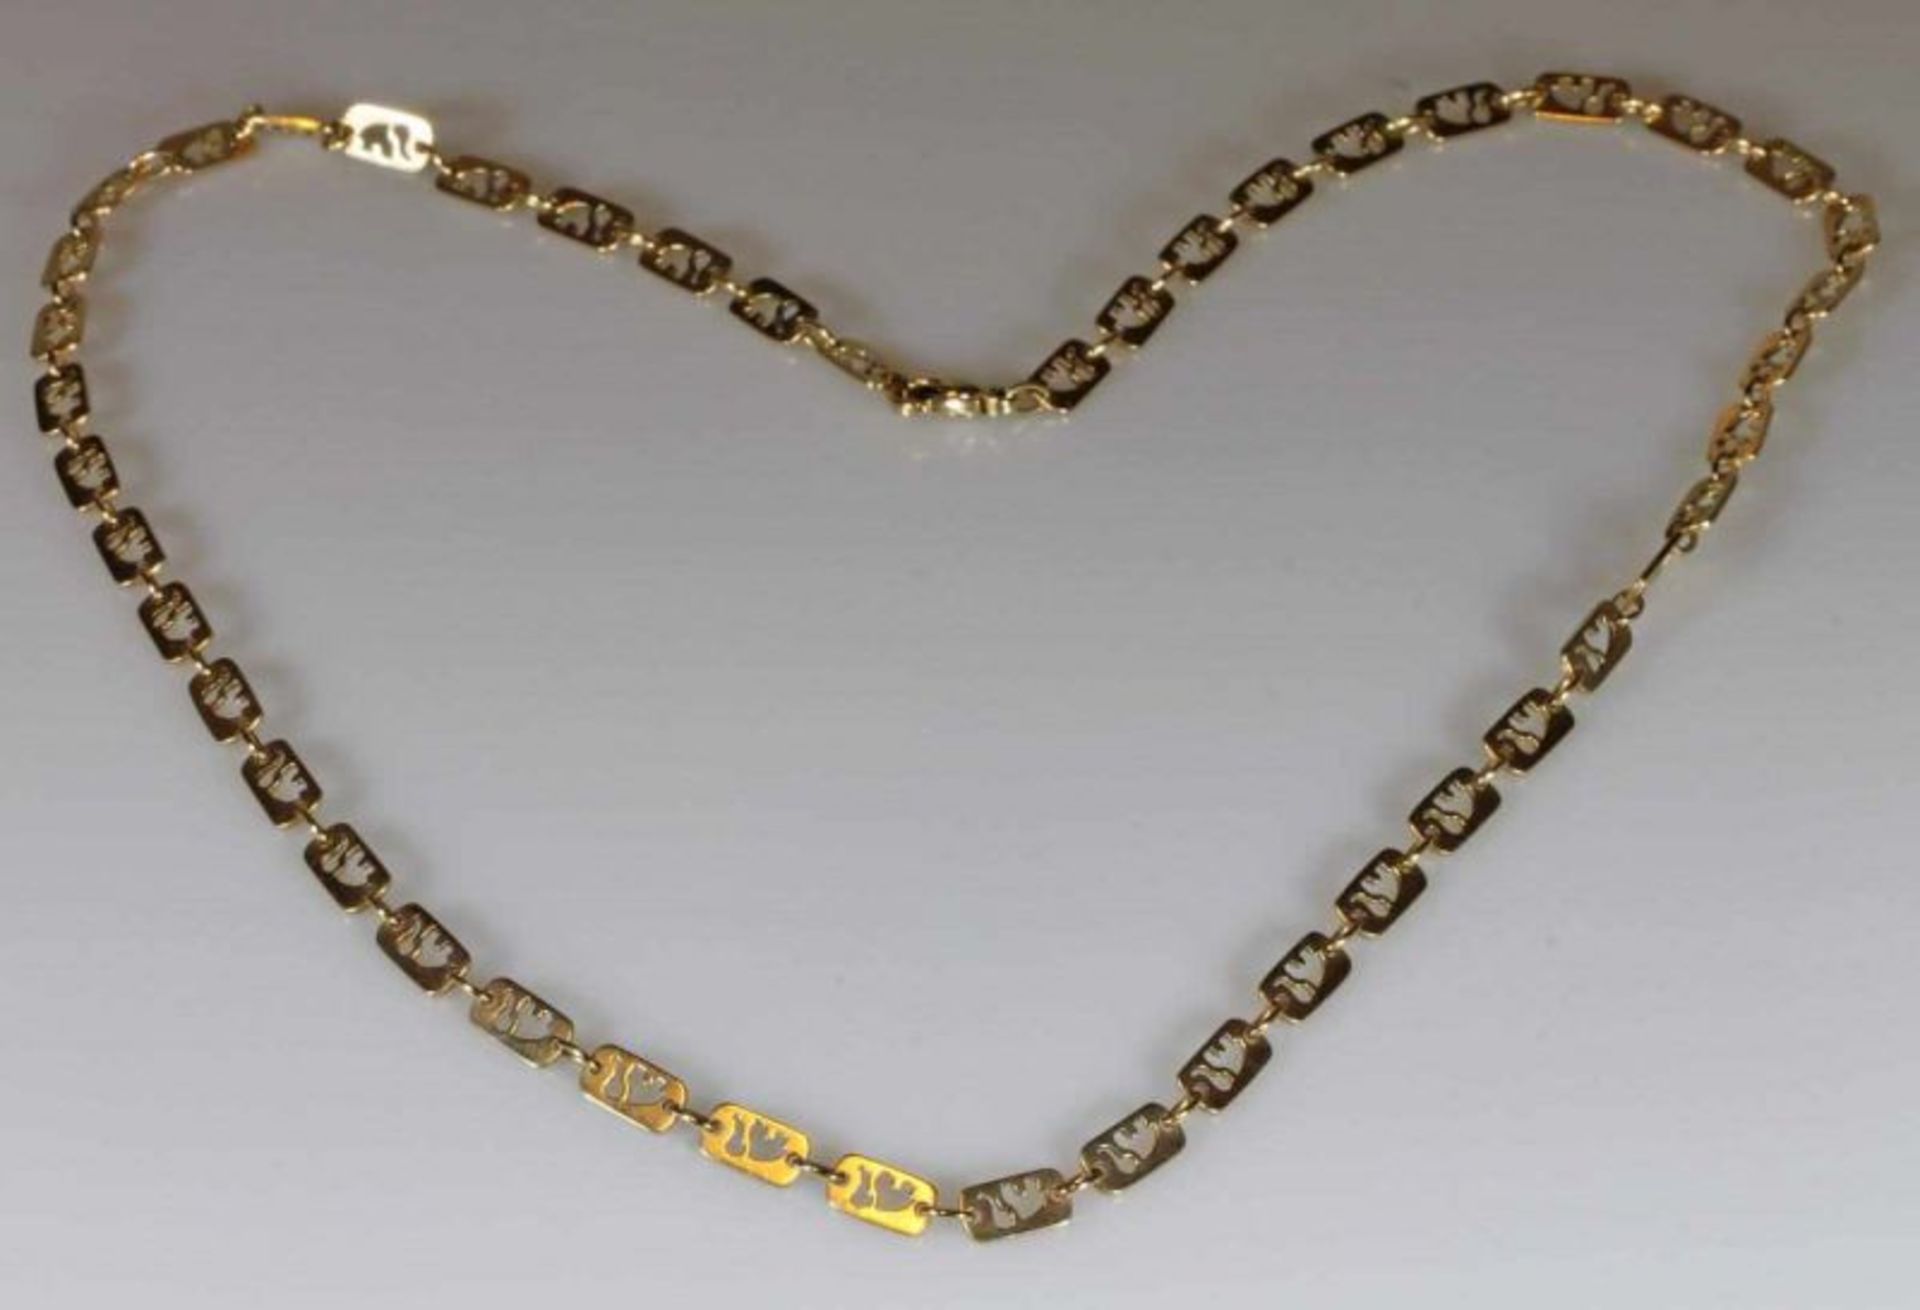 Halskette, Durchbrucharbeit in Form von 'Elefanten', RG 585, 56 cm, 17 g 21.01 % buyer's premium